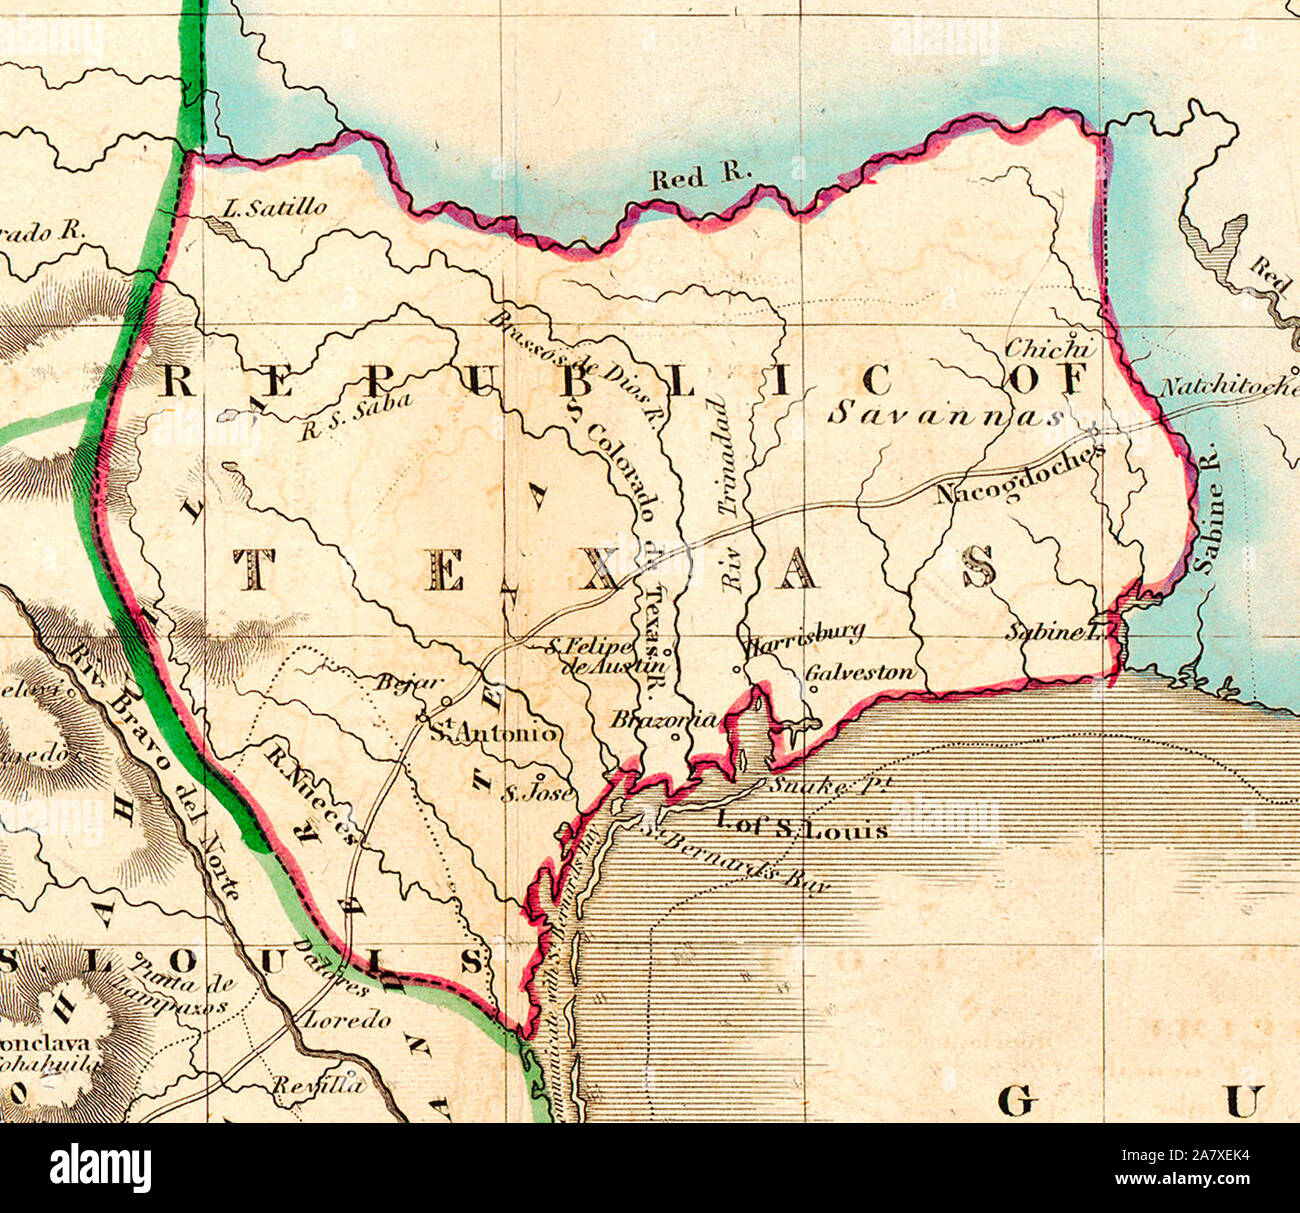 Karte von Texas im Jahre 1836 - Kurz nach Texas, seine Unabhängigkeit von Mexiko im Jahr 1836 erklärt, das Edinburgh Maler, Kupferstecher, Drucker, Kartograph, Lithograph und Verleger William Home Lizars (1788-1859), Bruder von Daniel Lizars II (1793-1875) die ursprüngliche Platte für die Karte von Mexiko & Guatemala aktualisiert, um die neue Republik zu gehören. Er fügte hinzu, die Städte von Galveston, Harrisburg, Brazoria, S. Felipe de Austin (obwohl vor kurzem zerstört), Bejar, und. Jose' (wahrscheinlich beabsichtigten Goliad vertreten). Lizars machte keine weiteren Verbesserungen der allgemeinen kartografischer Form der Republik mit Ausnahme von Stockfoto